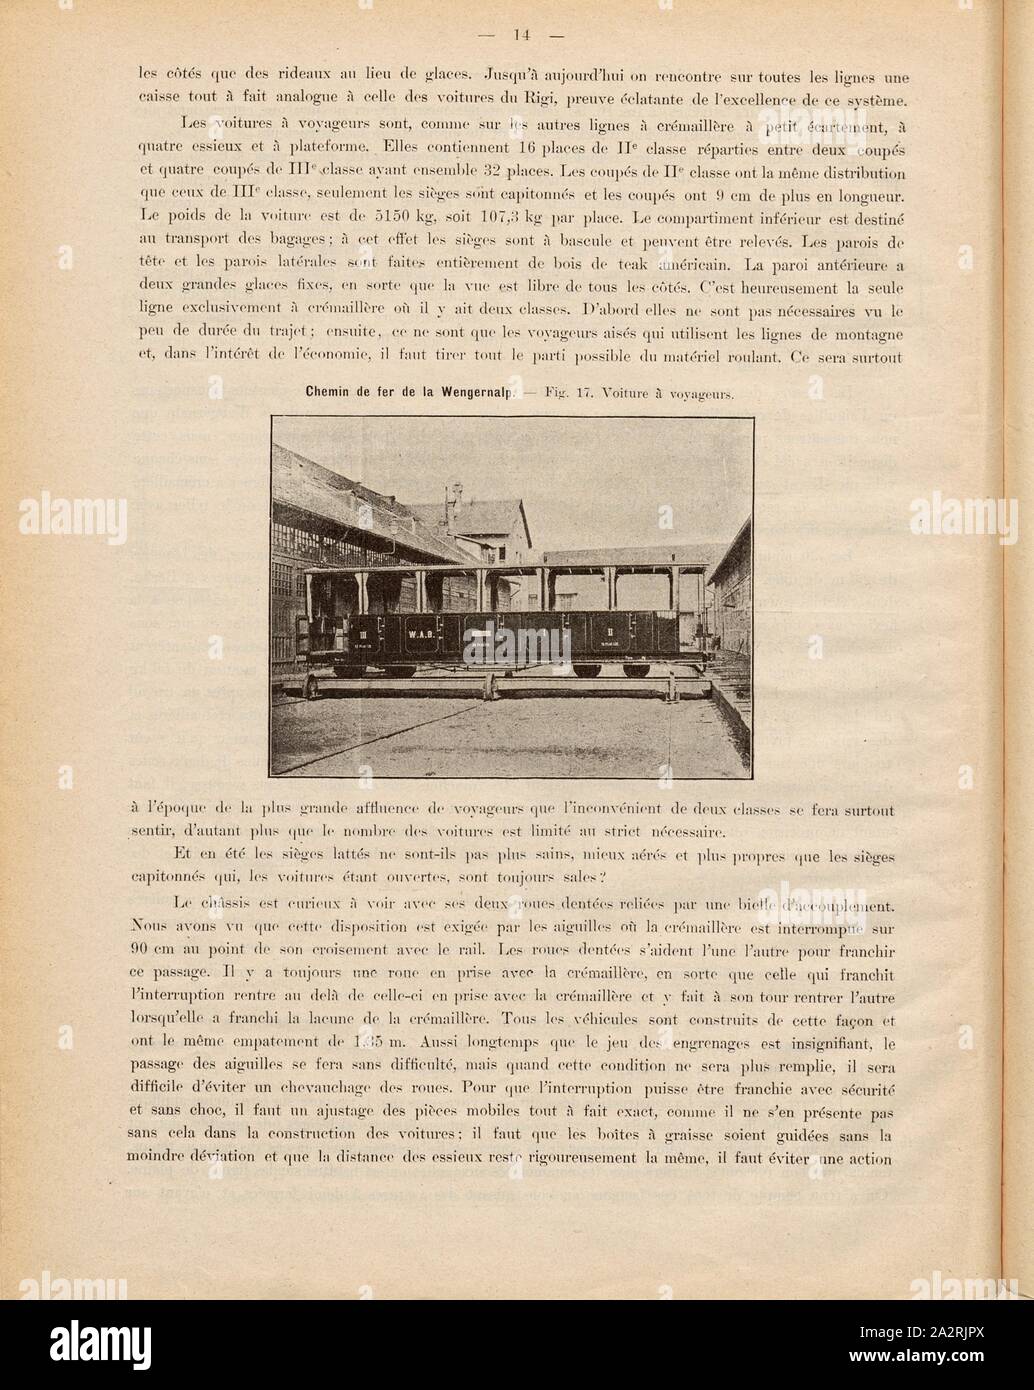 Voiture de tourisme, photographie d'un train de voyageurs des trains / passagers, fig. 17, p. 14, 1893, Emil Strub : Le chemin de fer de la Wengernalp. [S.l.] : [s.n.], 1893 Banque D'Images